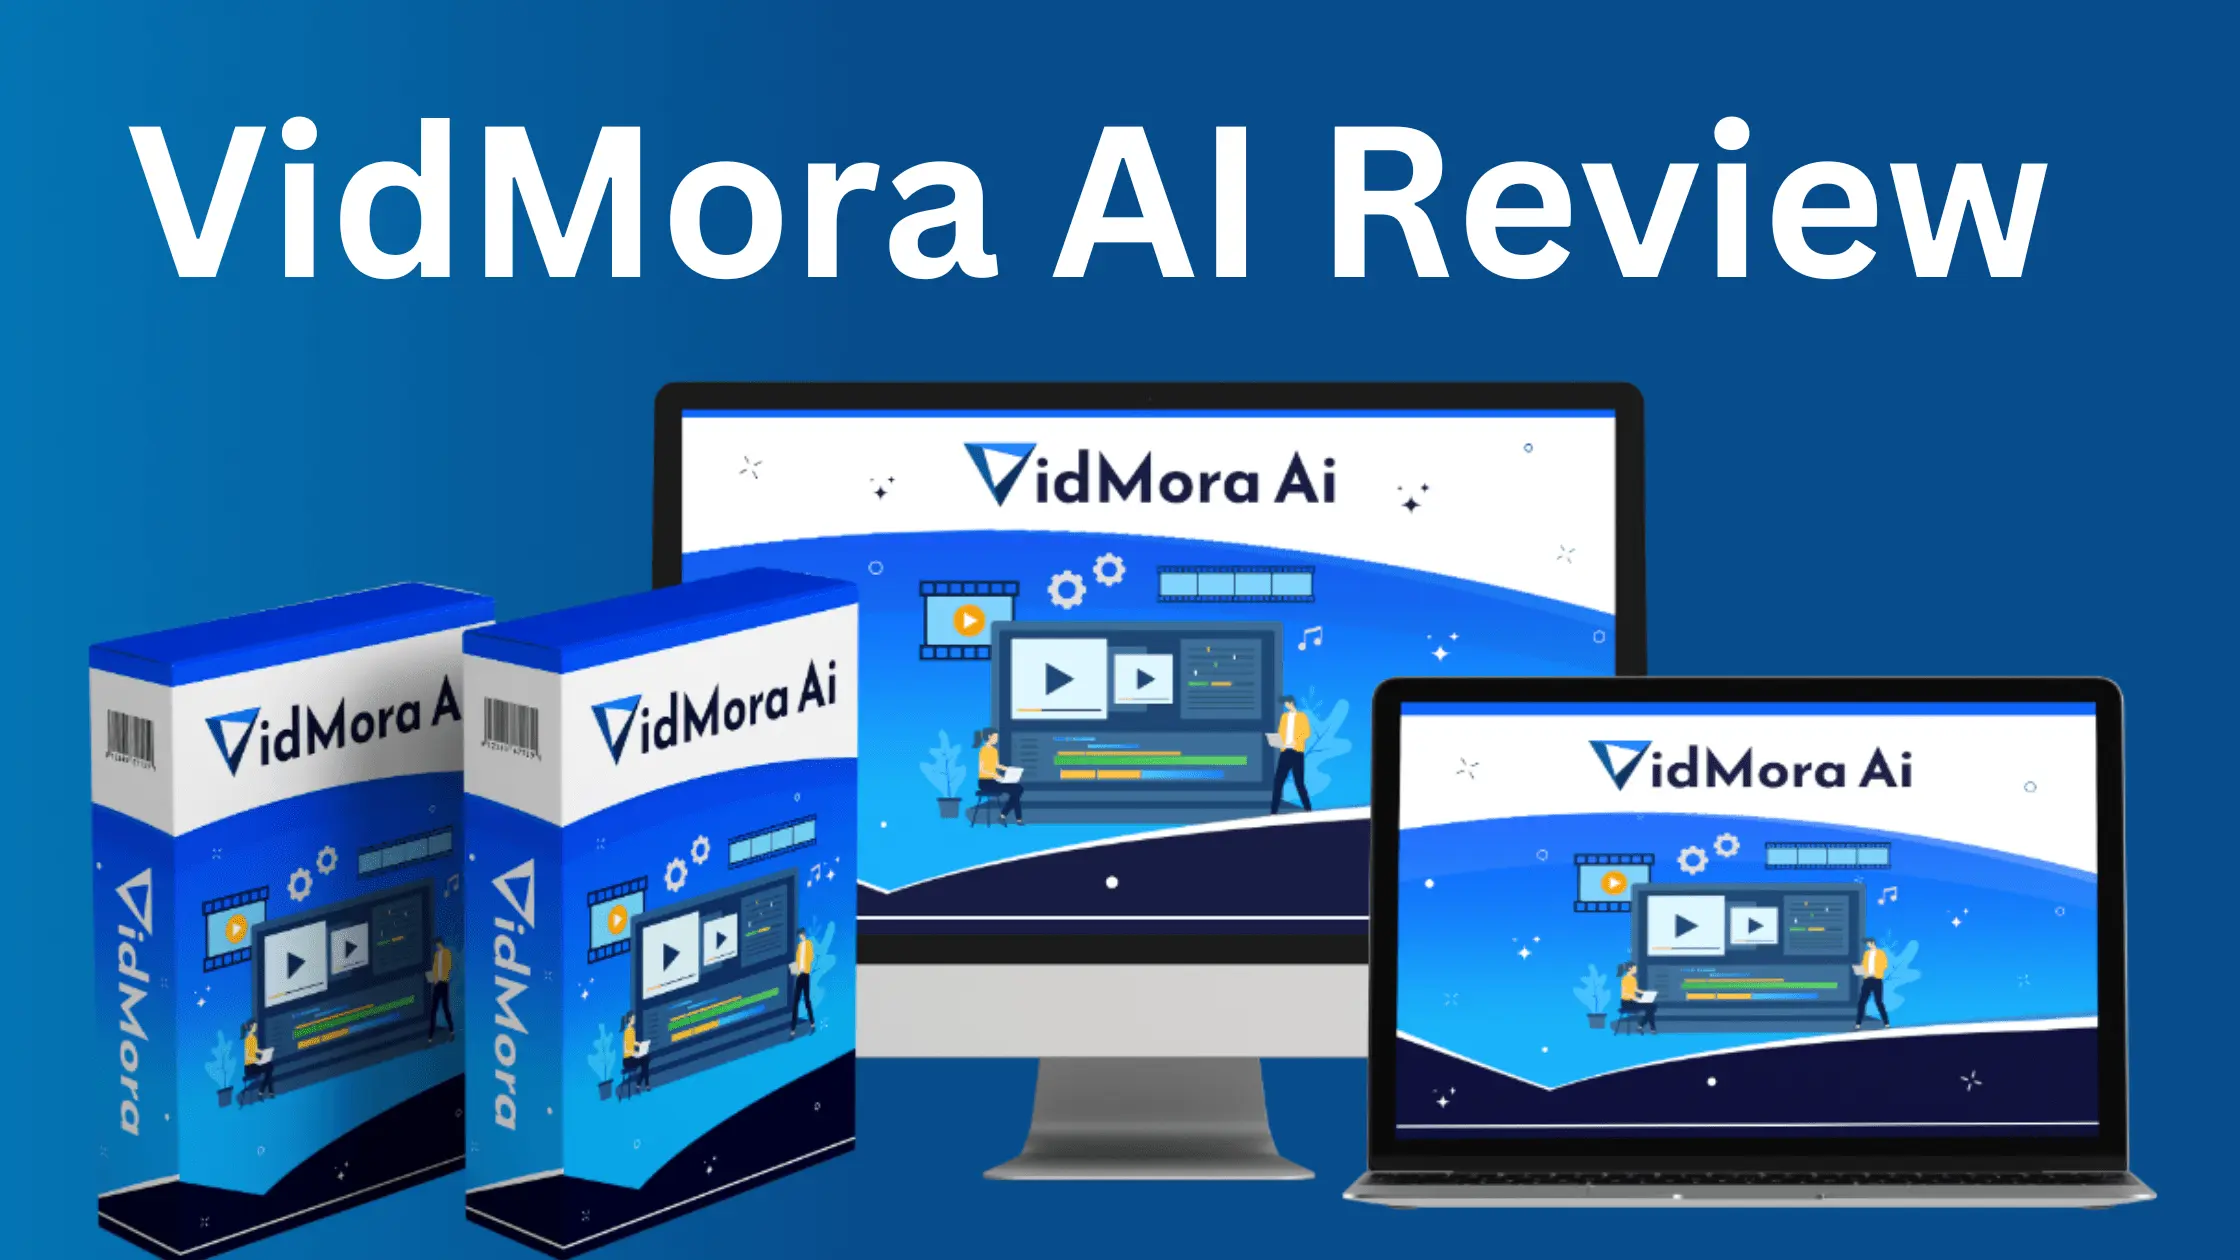 VidMora AI Review